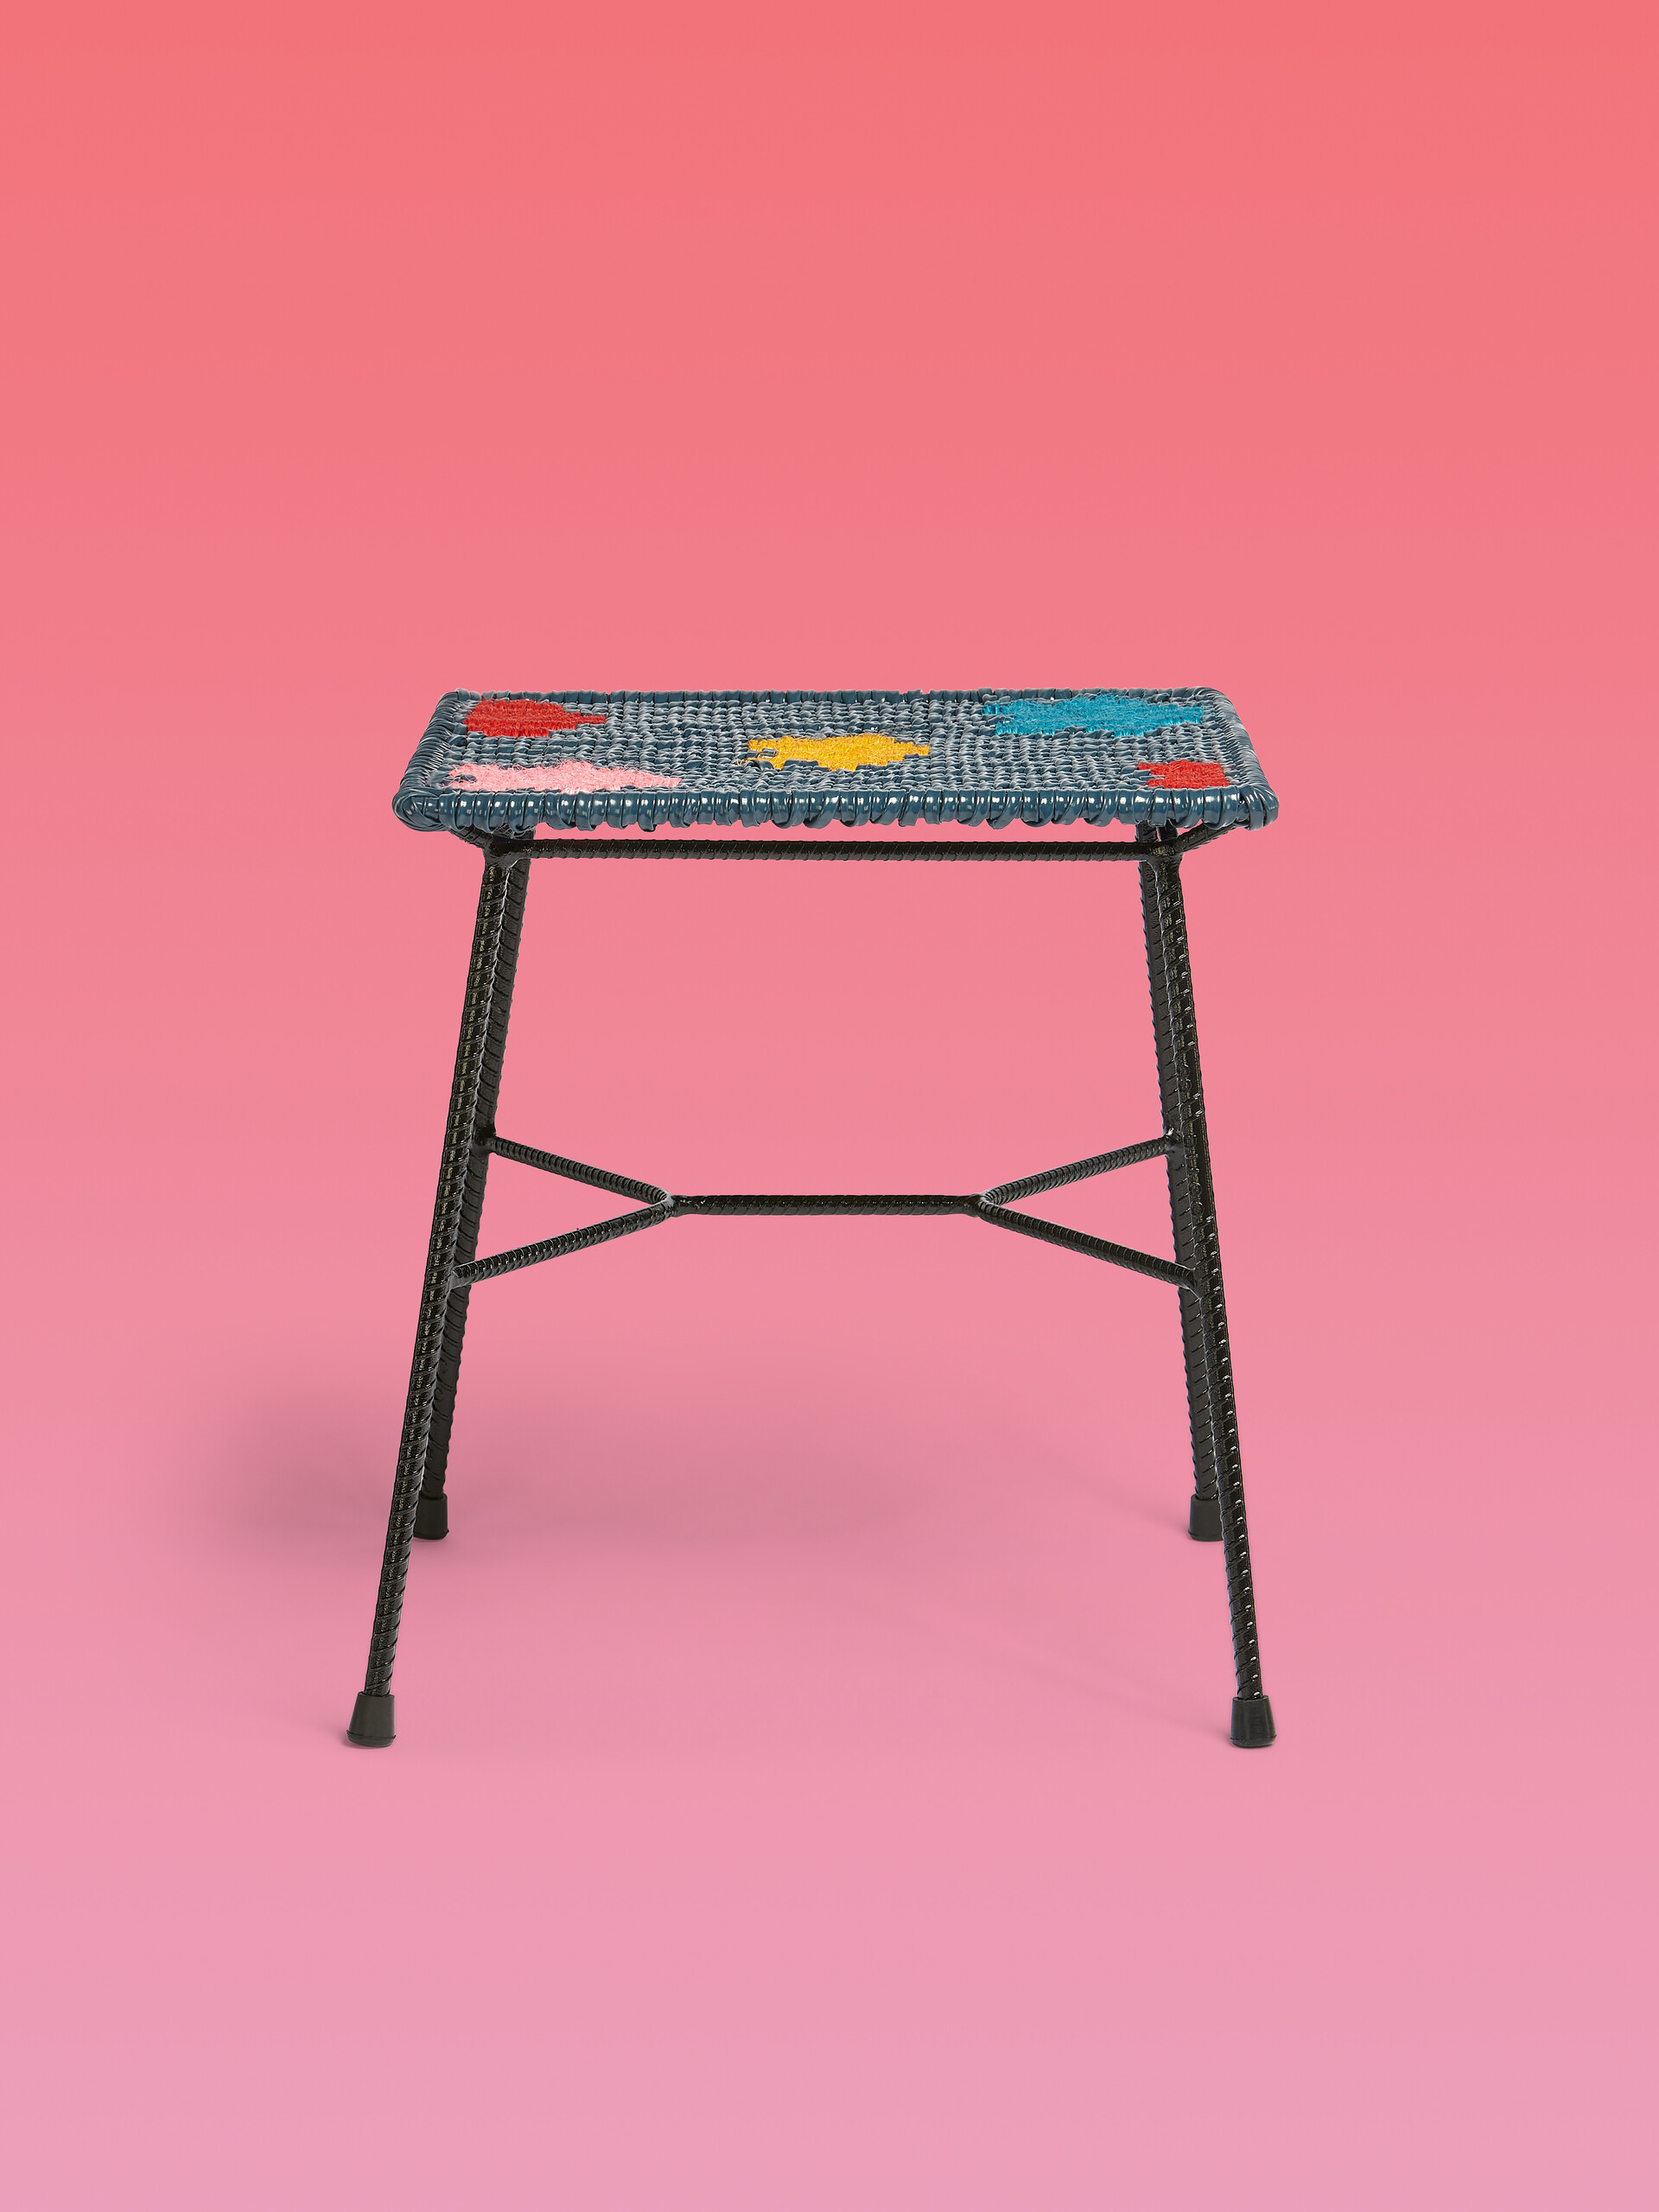 Sgabello-tavolo quadrato MARNI MARKET in ferro PVC colorblock - Arredamento - Image 1